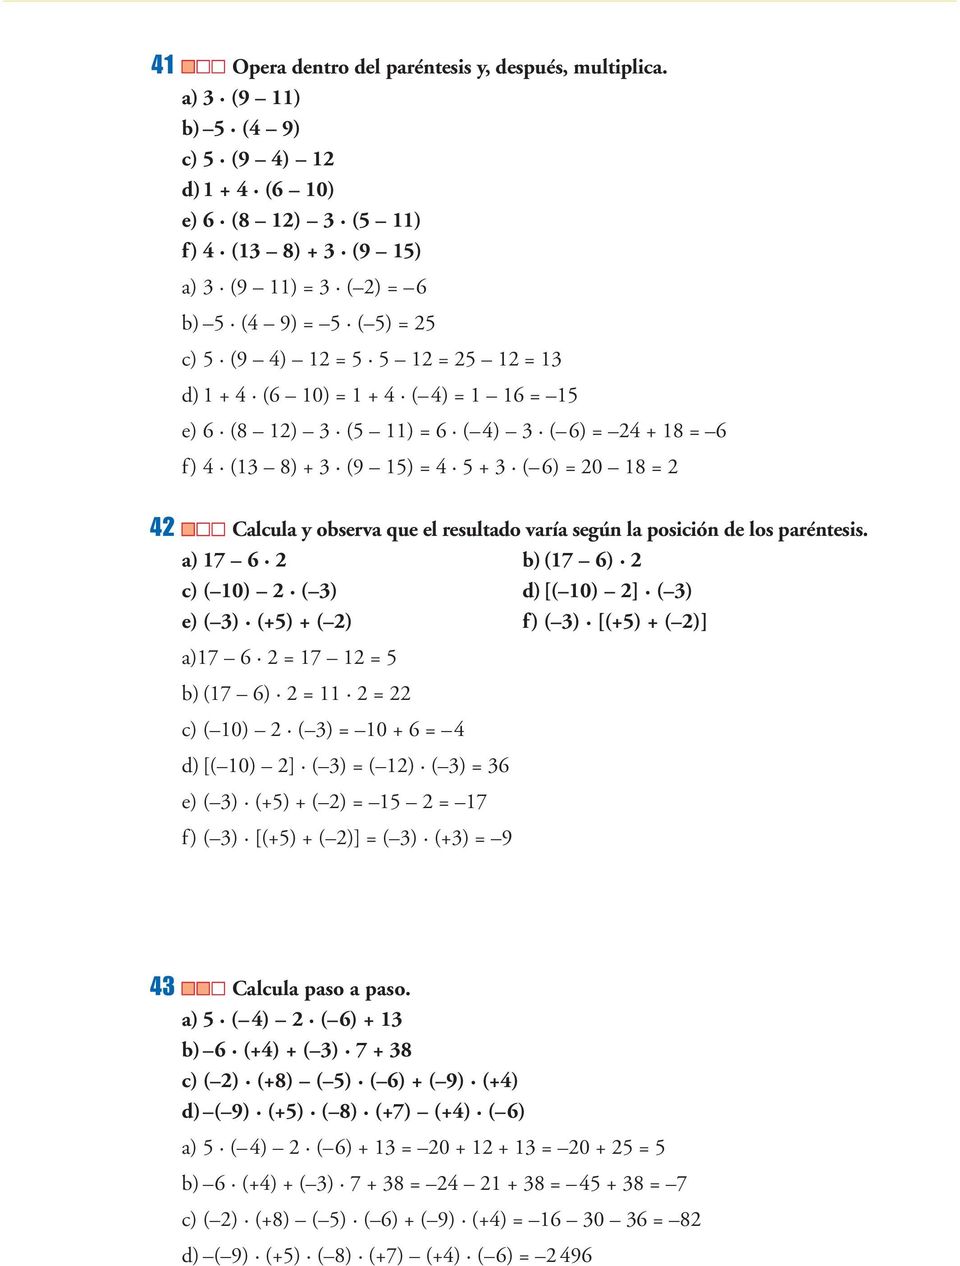 1 + 4 ( 4) = 1 16 = 15 e) 6 (8 12) 3 (5 11) = 6 ( 4) 3 ( 6) = 24 + 18 = 6 f) 4 (13 8) + 3 (9 15) = 4 5 + 3 ( 6) = 20 18 = 2 42 Calcula y observa que el resultado varía según la posición de los